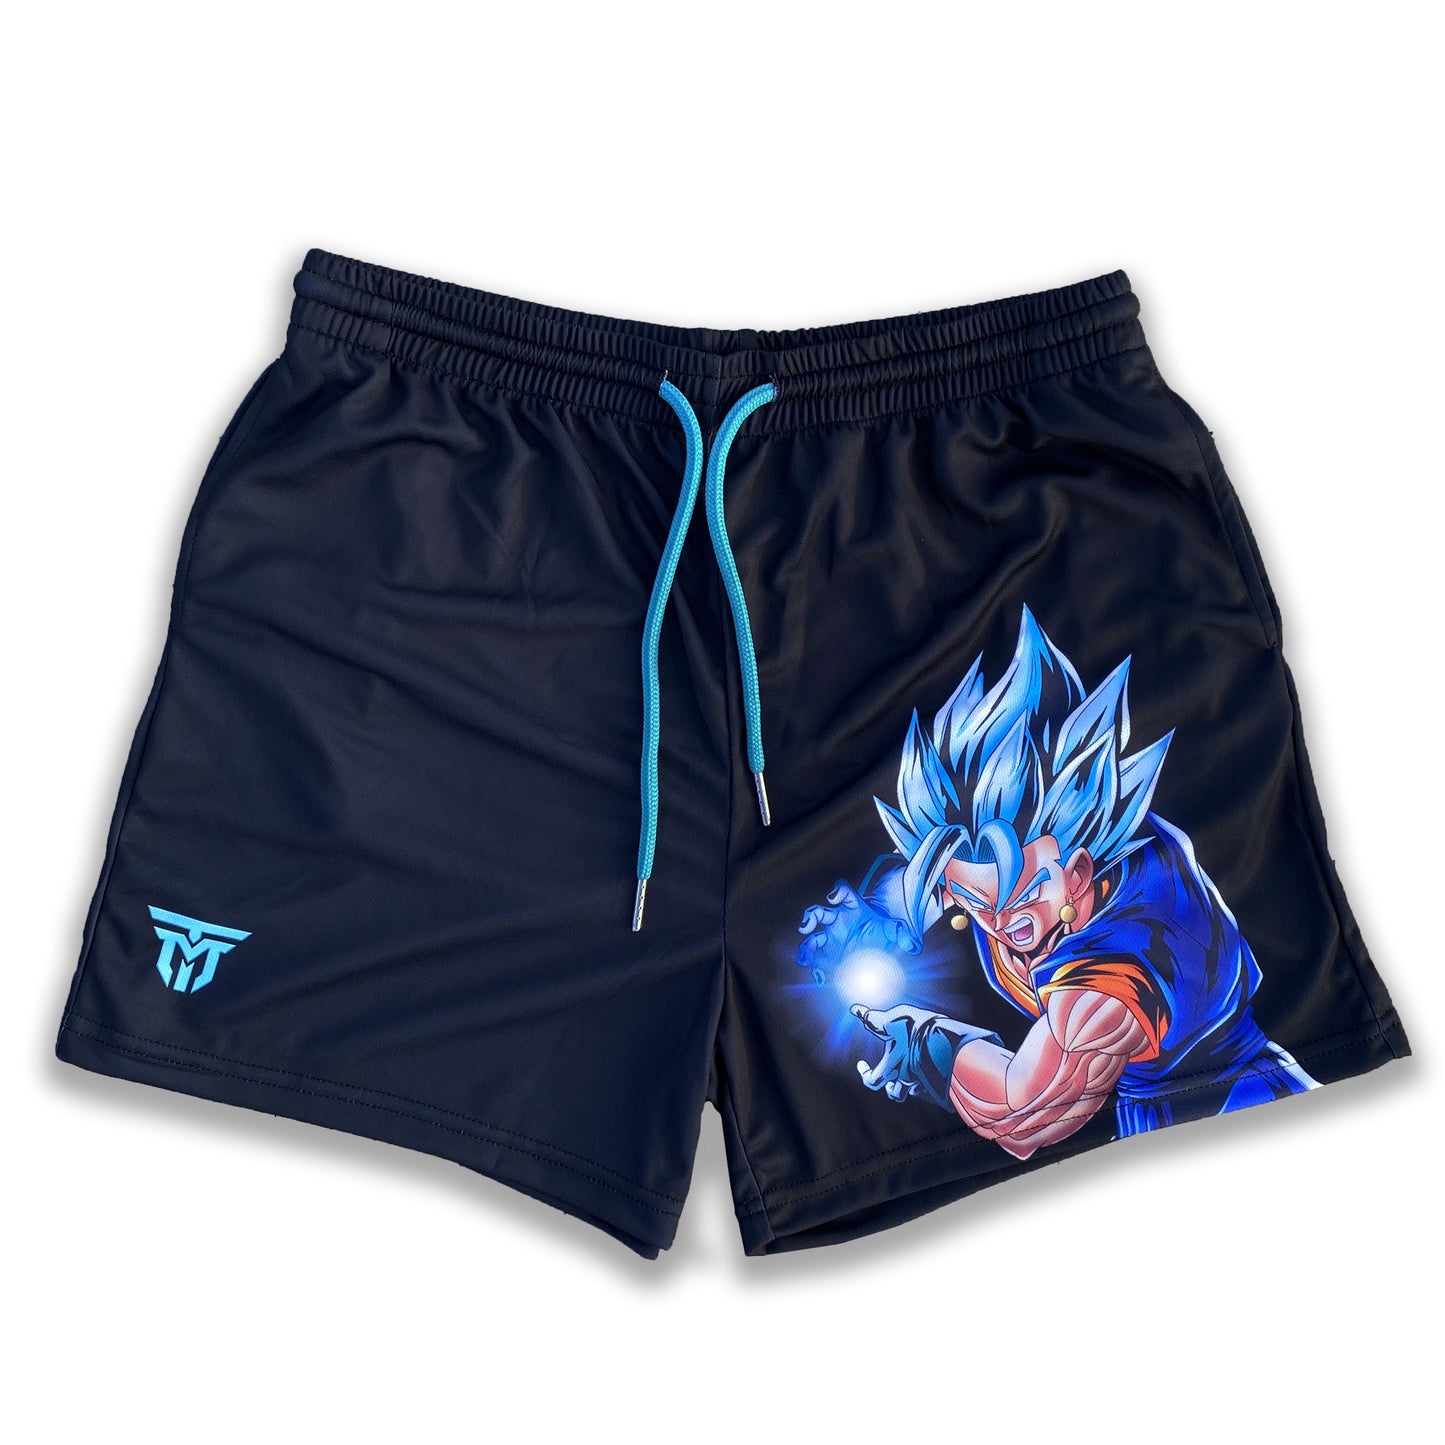 Super Saiyan Blue Shorts